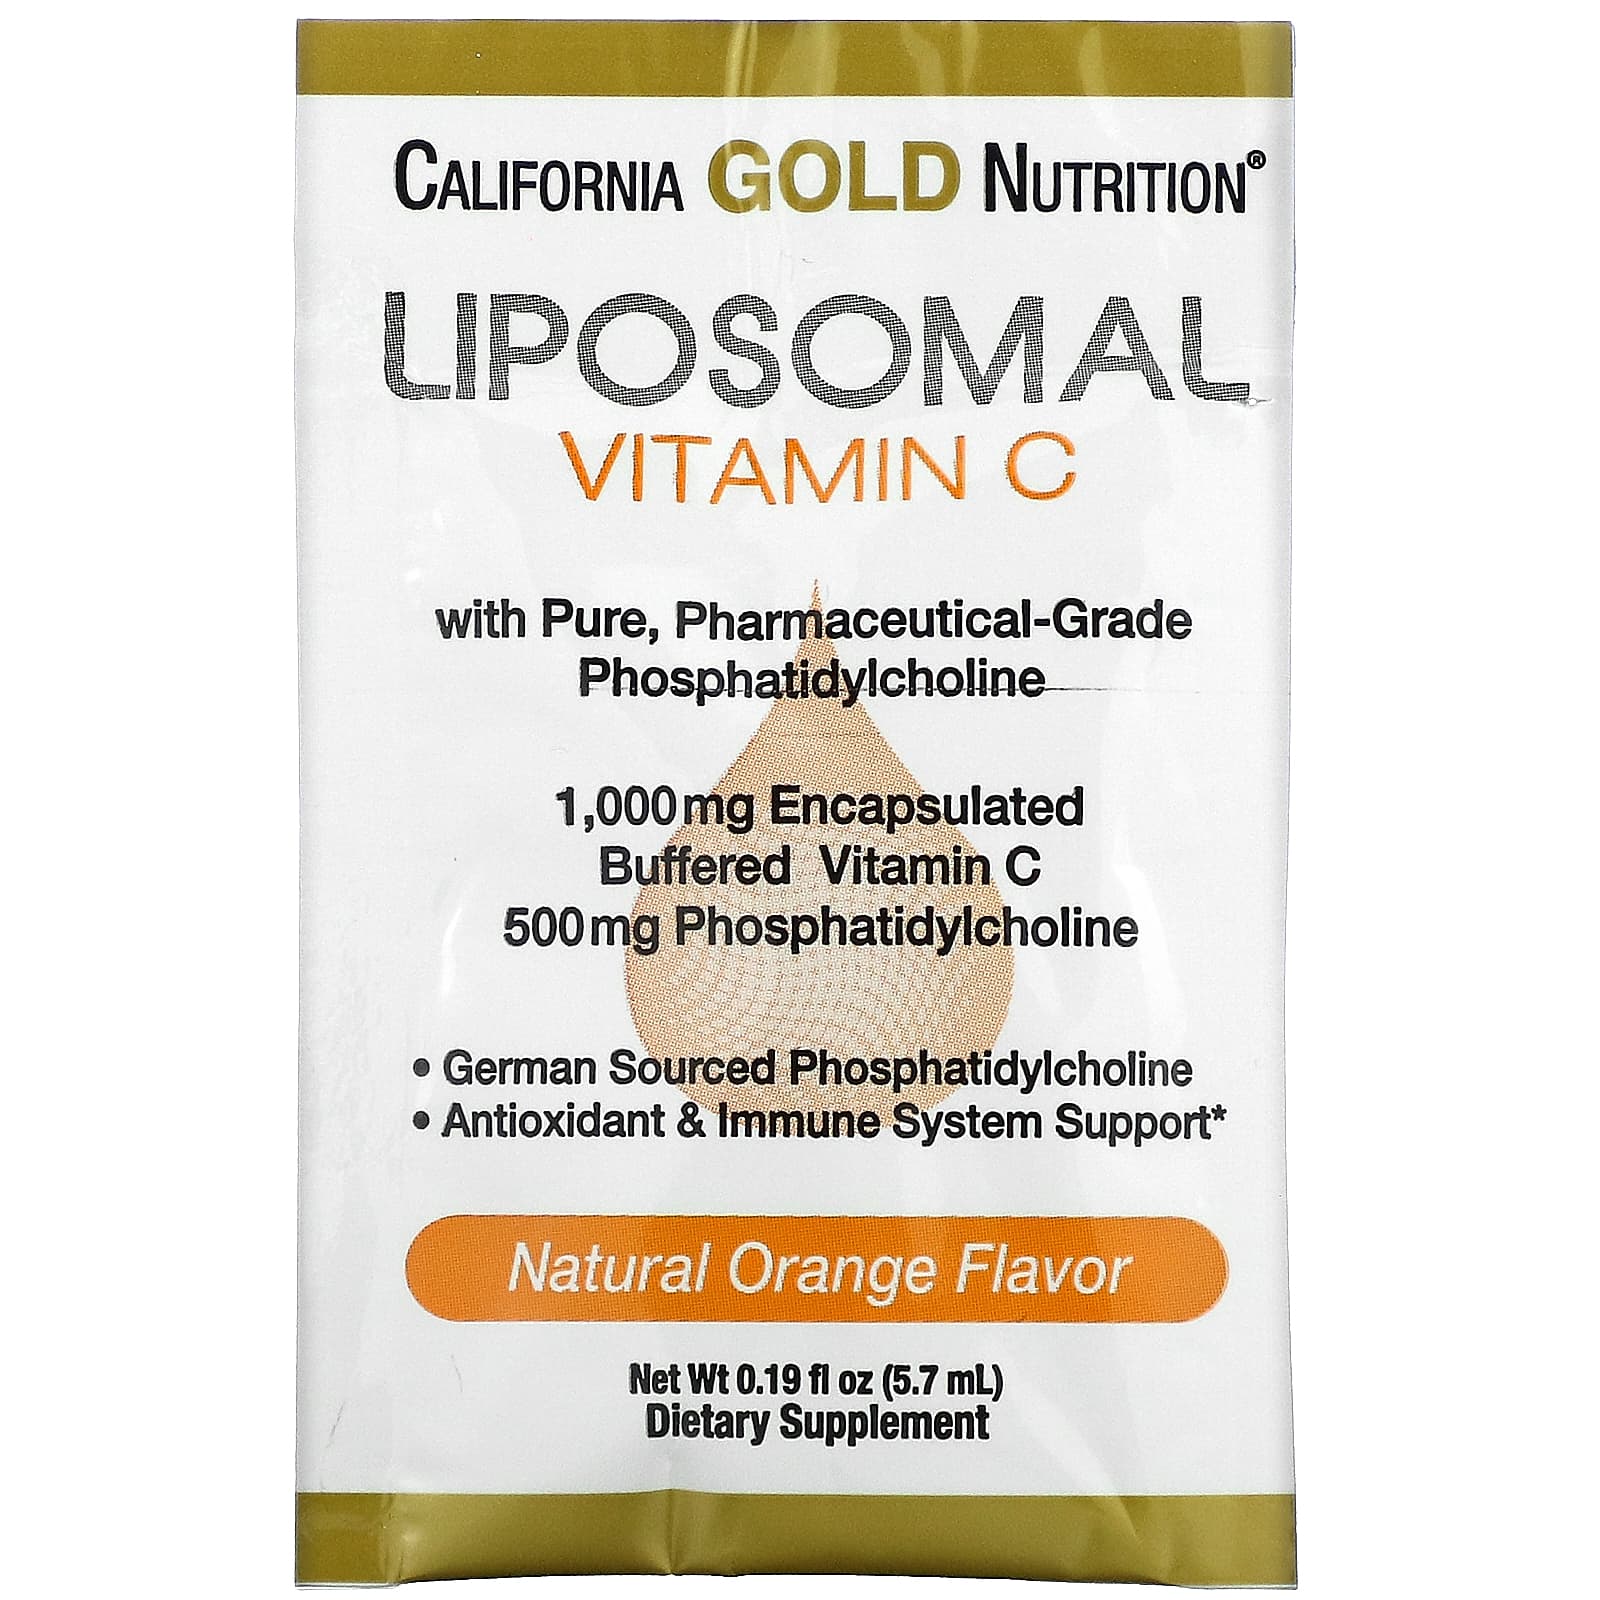 8241円 期間限定お試し価格 リポソームビタミンC-非GMOヒマワリリポソームを使用した米国製-30x 1 000 mgサービング 2 Healthy Habits Living Liposomal Vitamin C - Made in The USA with Non-GMO Sunflower Liposomes 30 x mg Servings